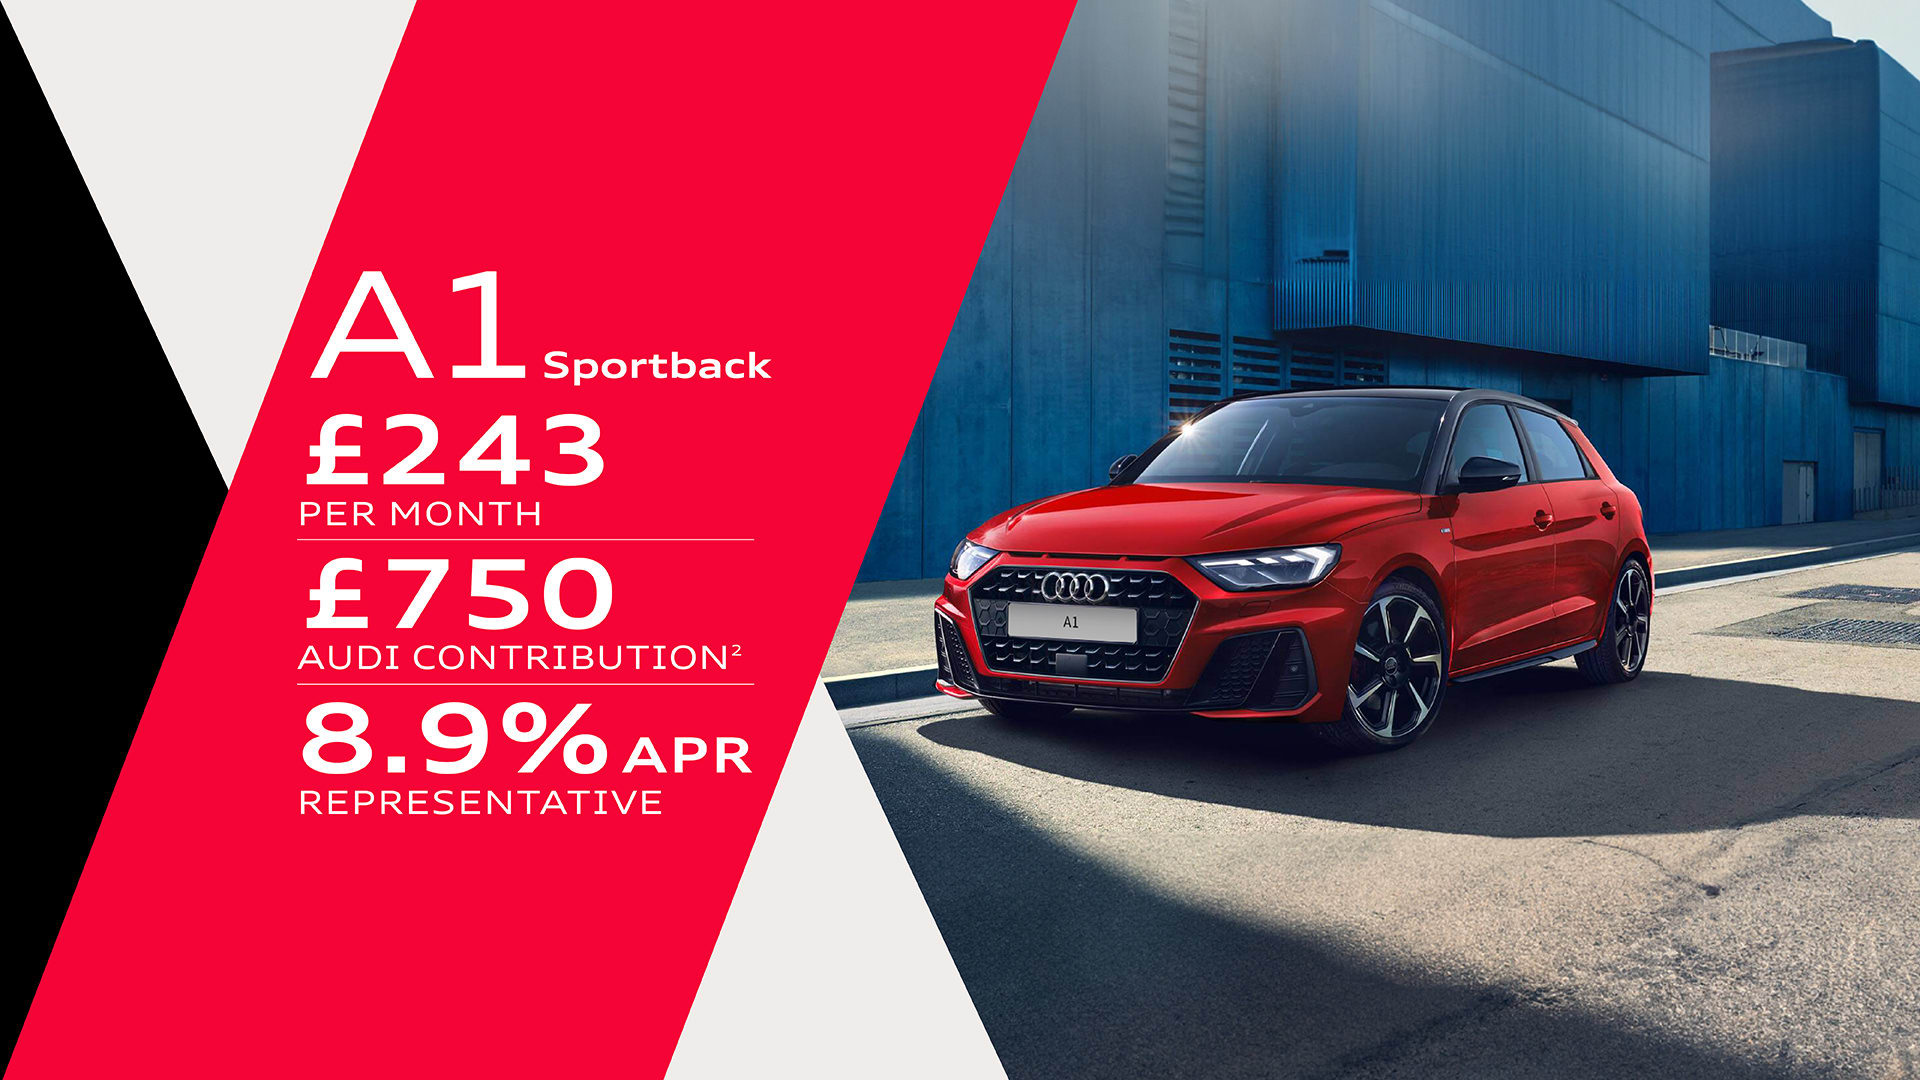 Audi A1 Sportback Finance Offer